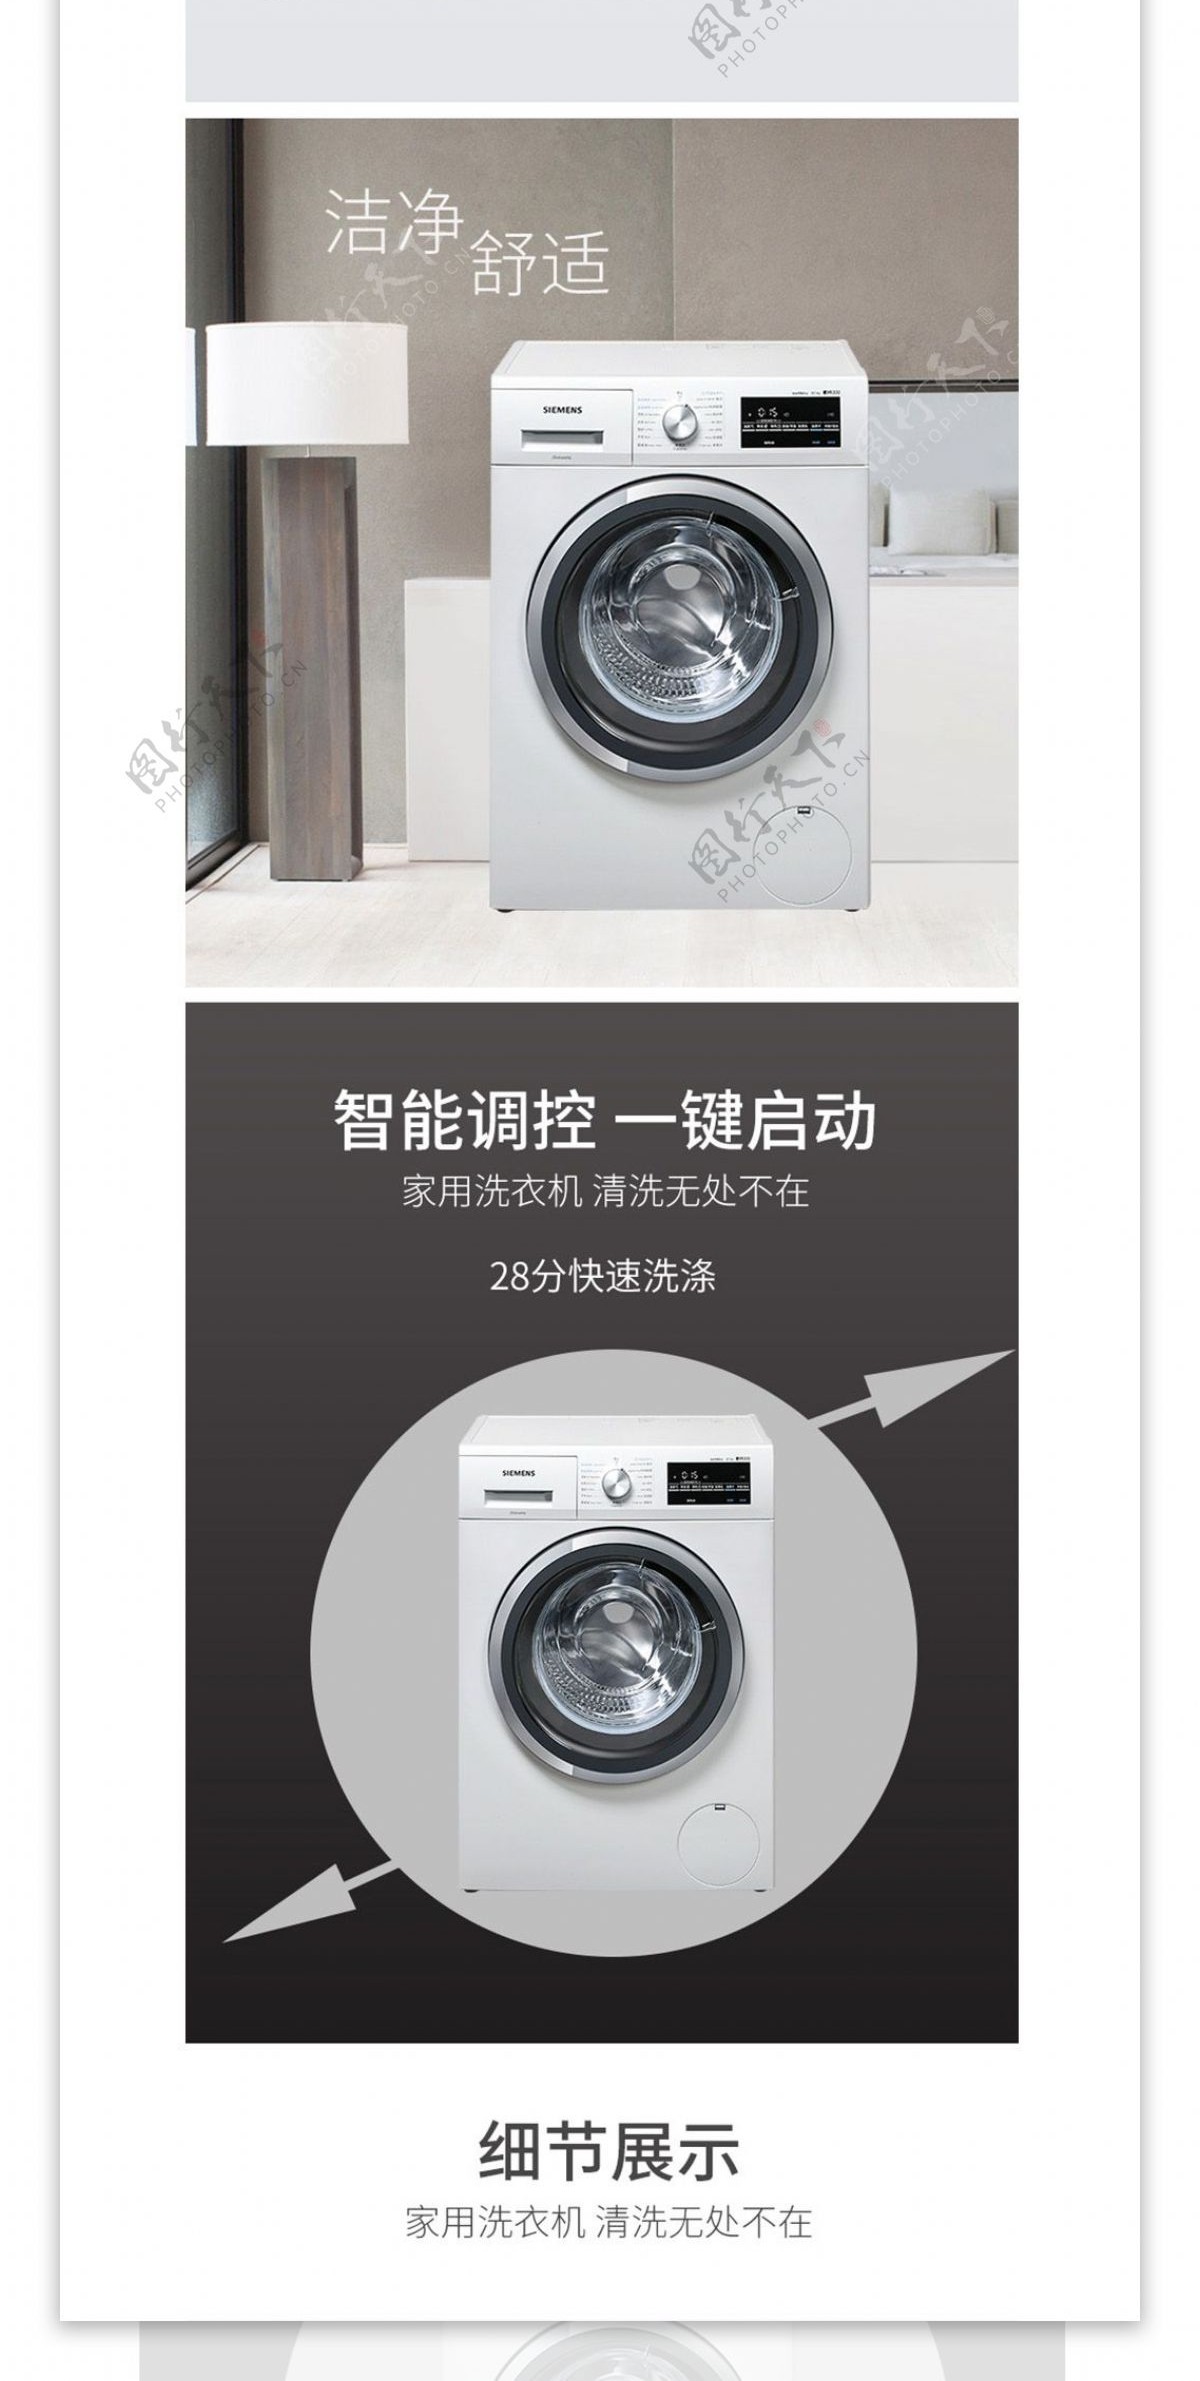 洗衣机电器电商淘宝简约详情模板